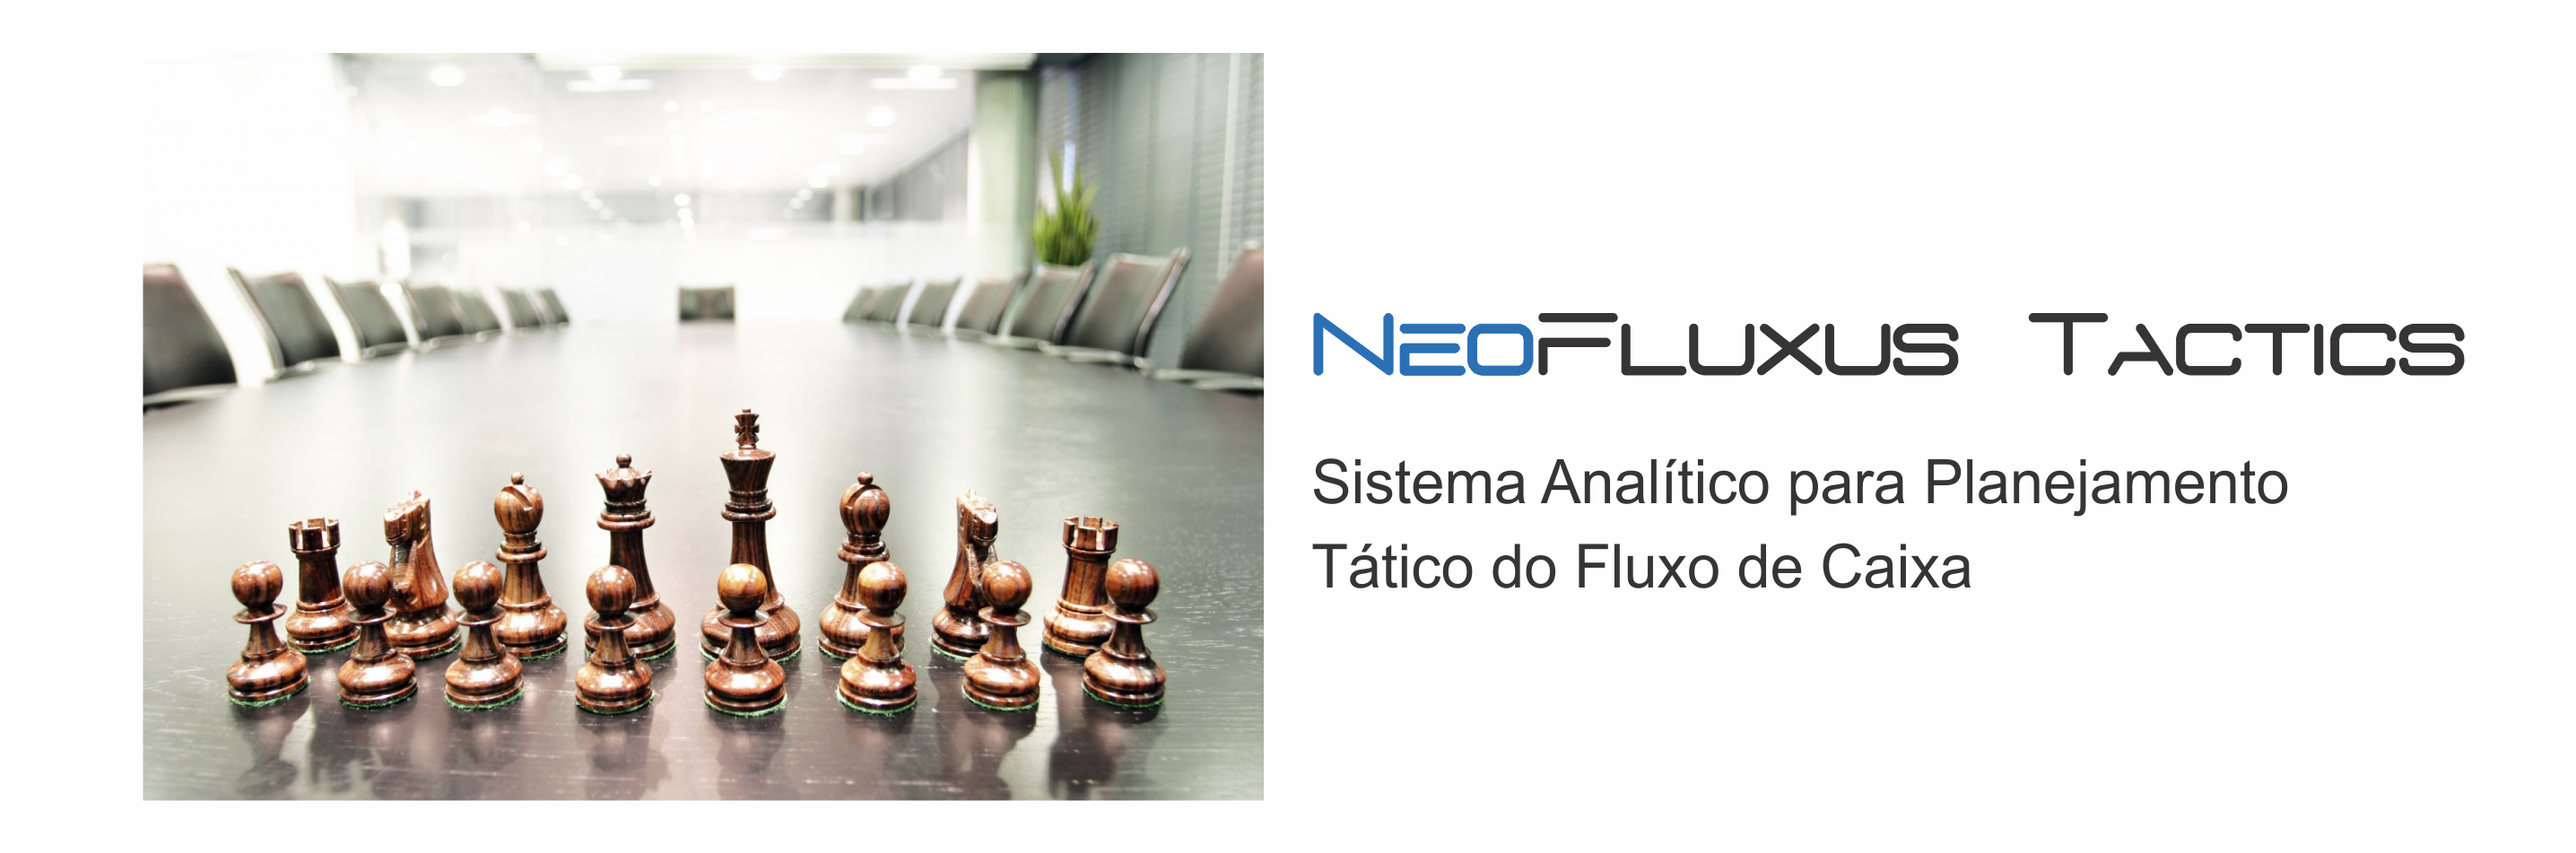 NeoFluxus Tactics. Integre seu fluxo de caixa, aplicações financeiros e financiamentos.